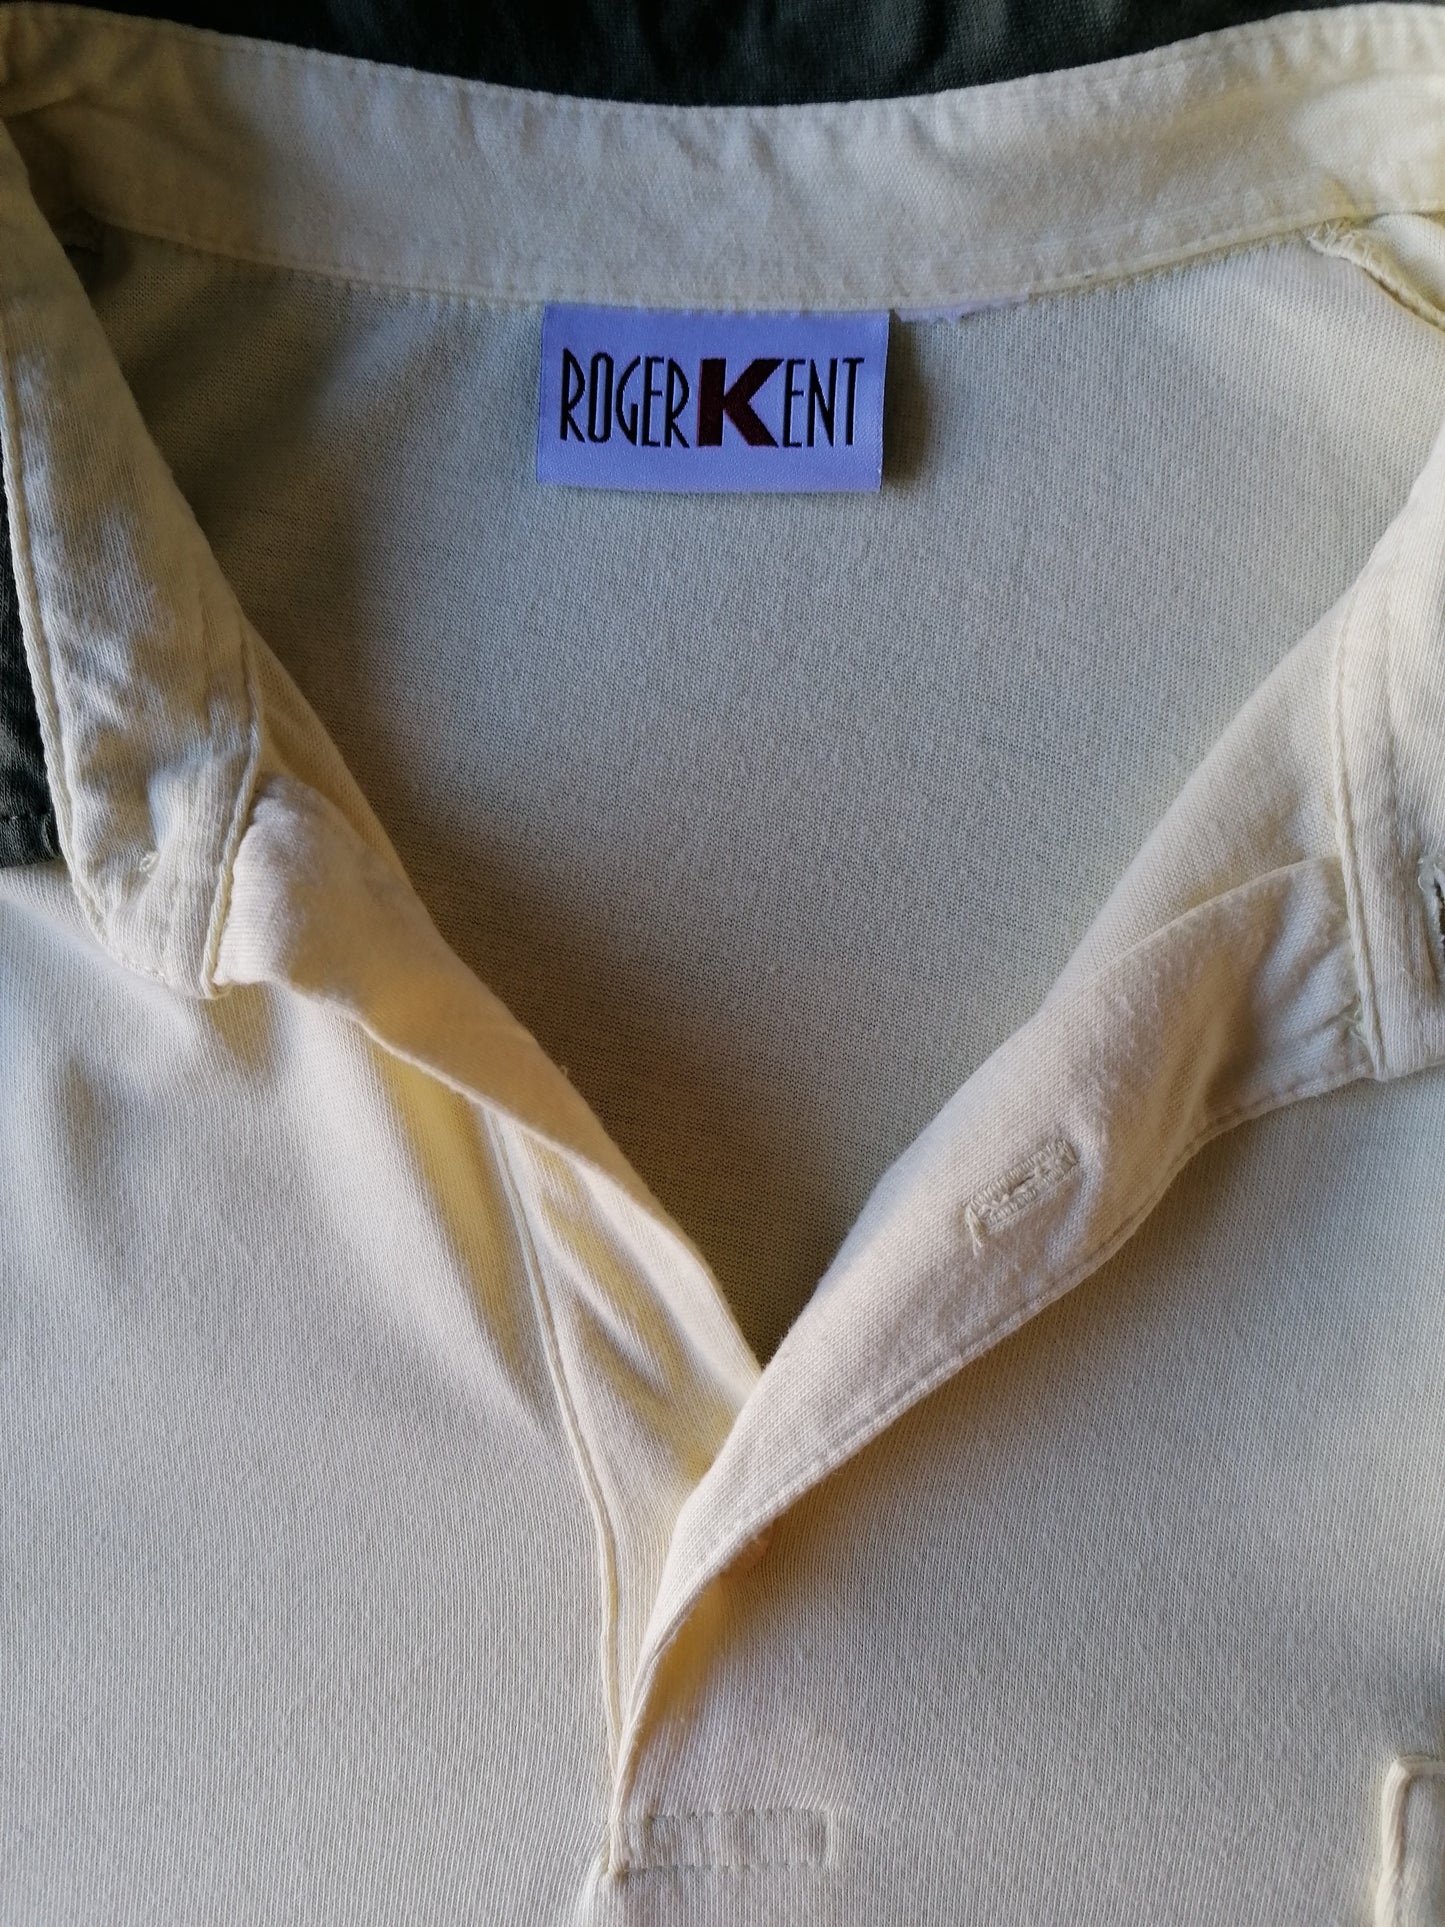 Vintage Roger Kent polo met borstzak en elastische band. Geel Groen gekleurd. Maat XL / XXL